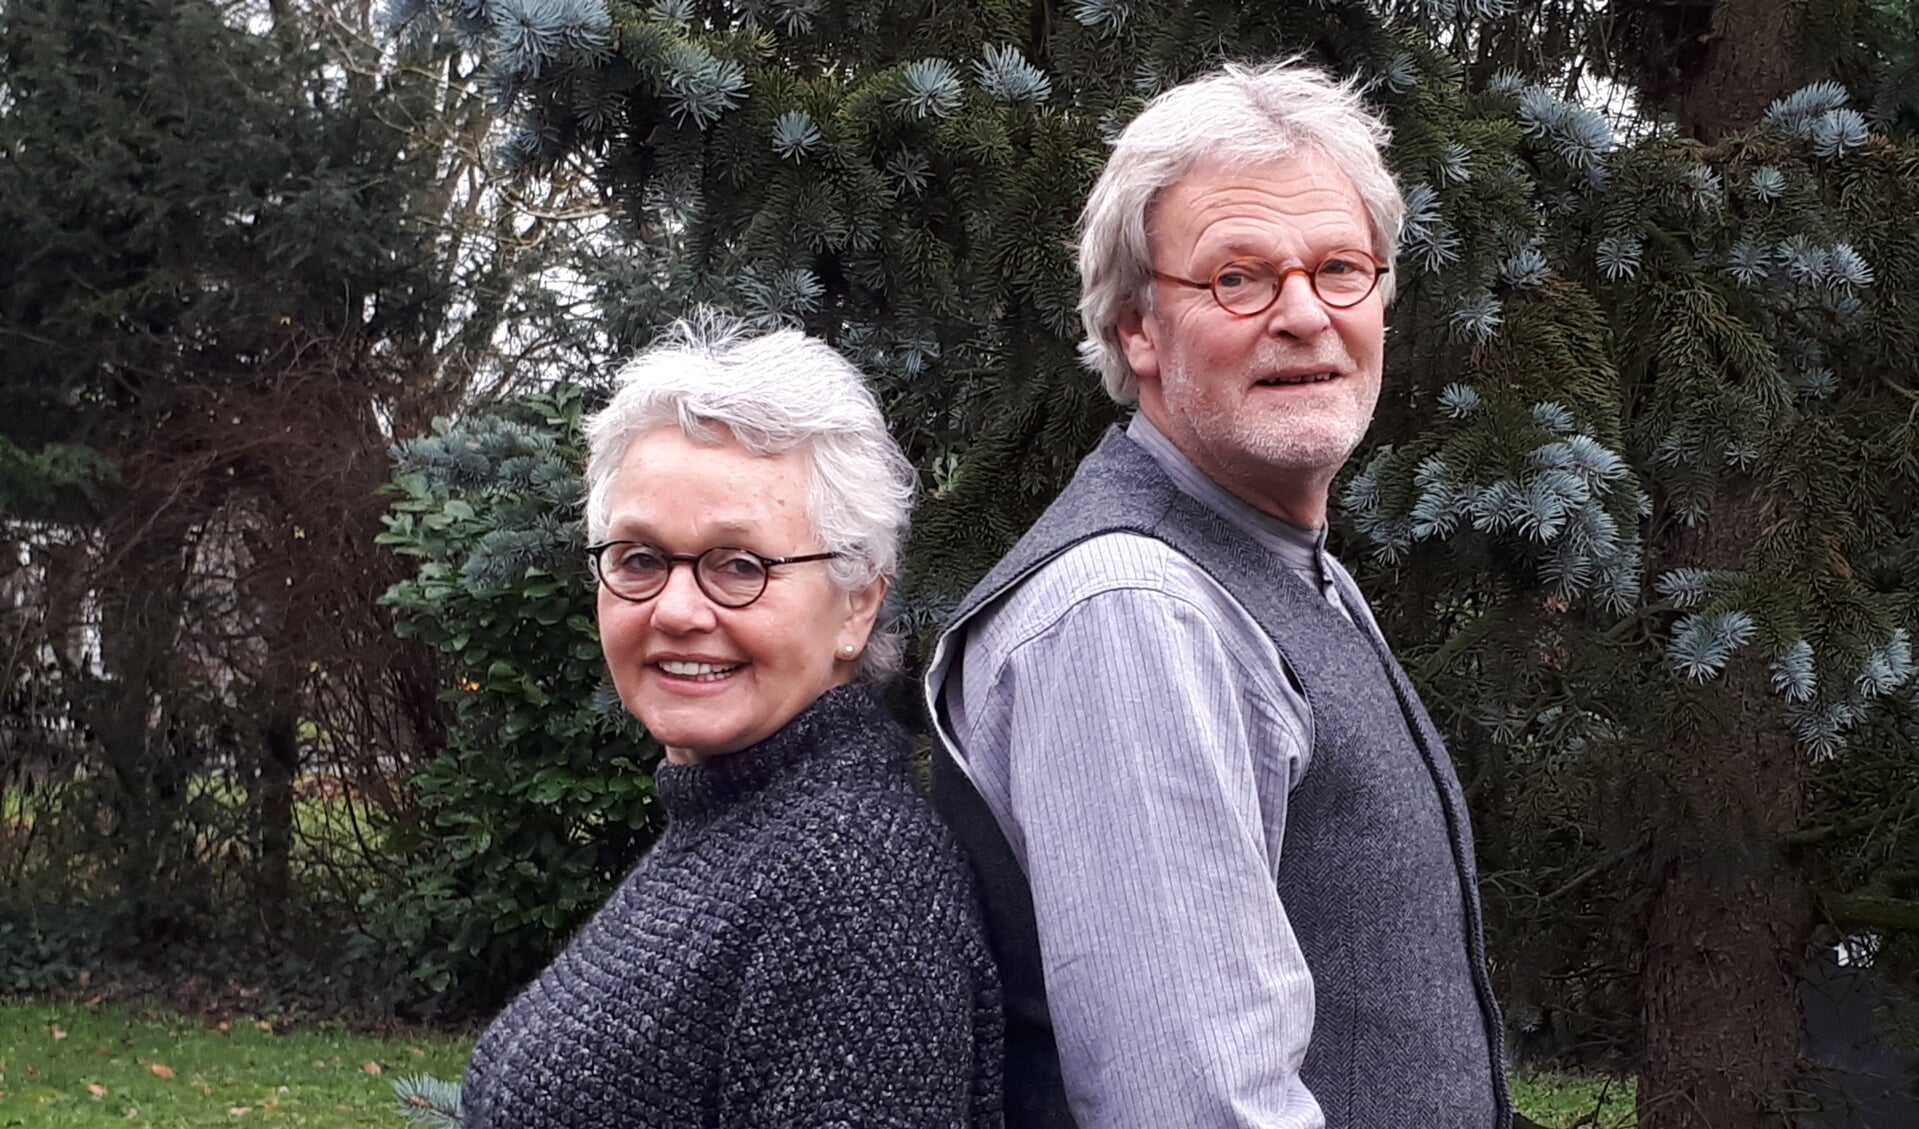 Helma Coolman en Huub de Graaff organiseren de Heuvelruggespraak over klimaatverandering.